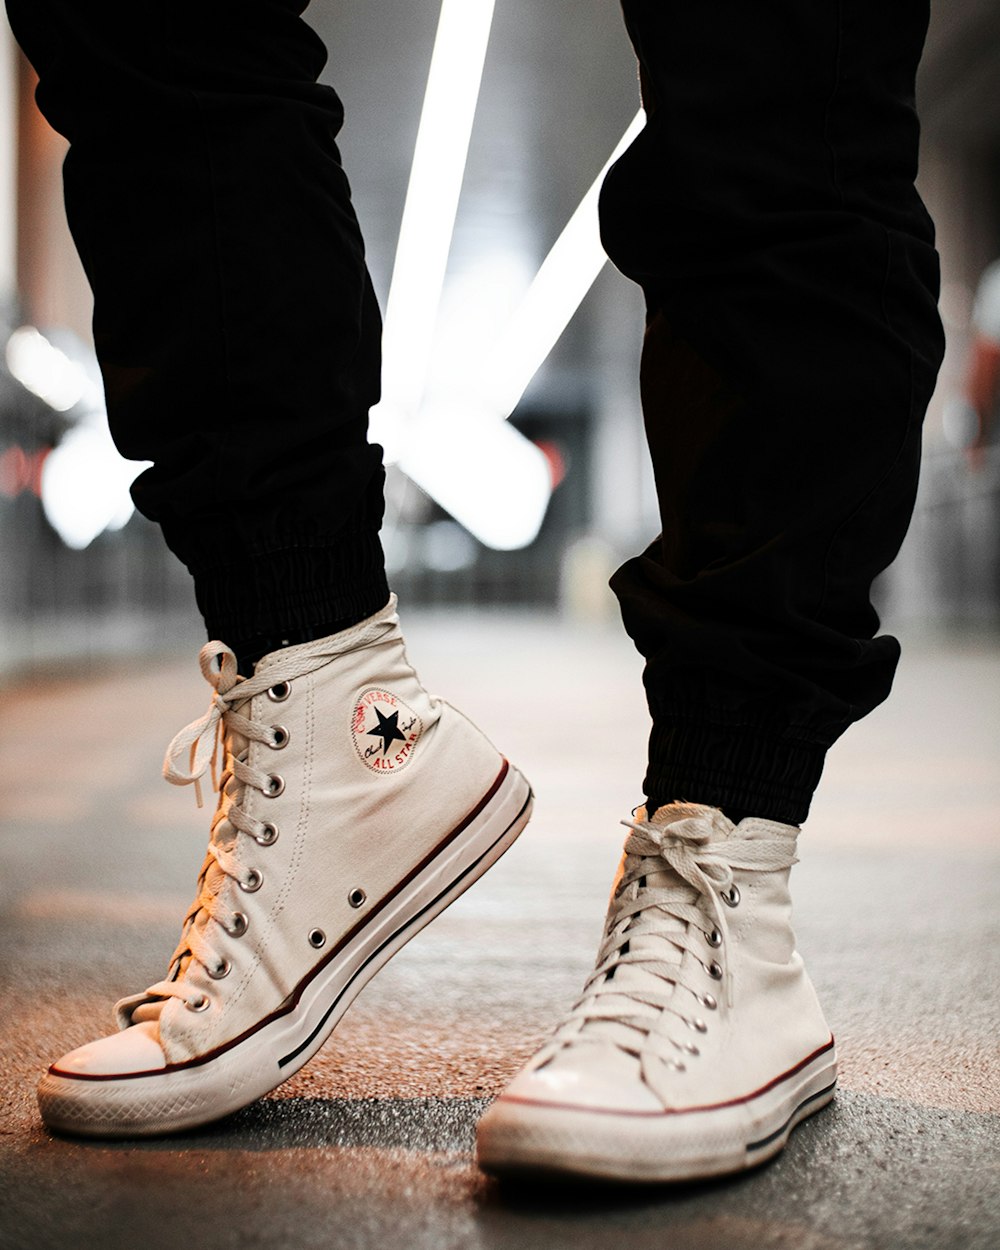 Receptor Denso Rubí Foto Persona en zapatillas altas converse all star marrones – Imagen Dubai,  emiratos arabes unidos gratis en Unsplash